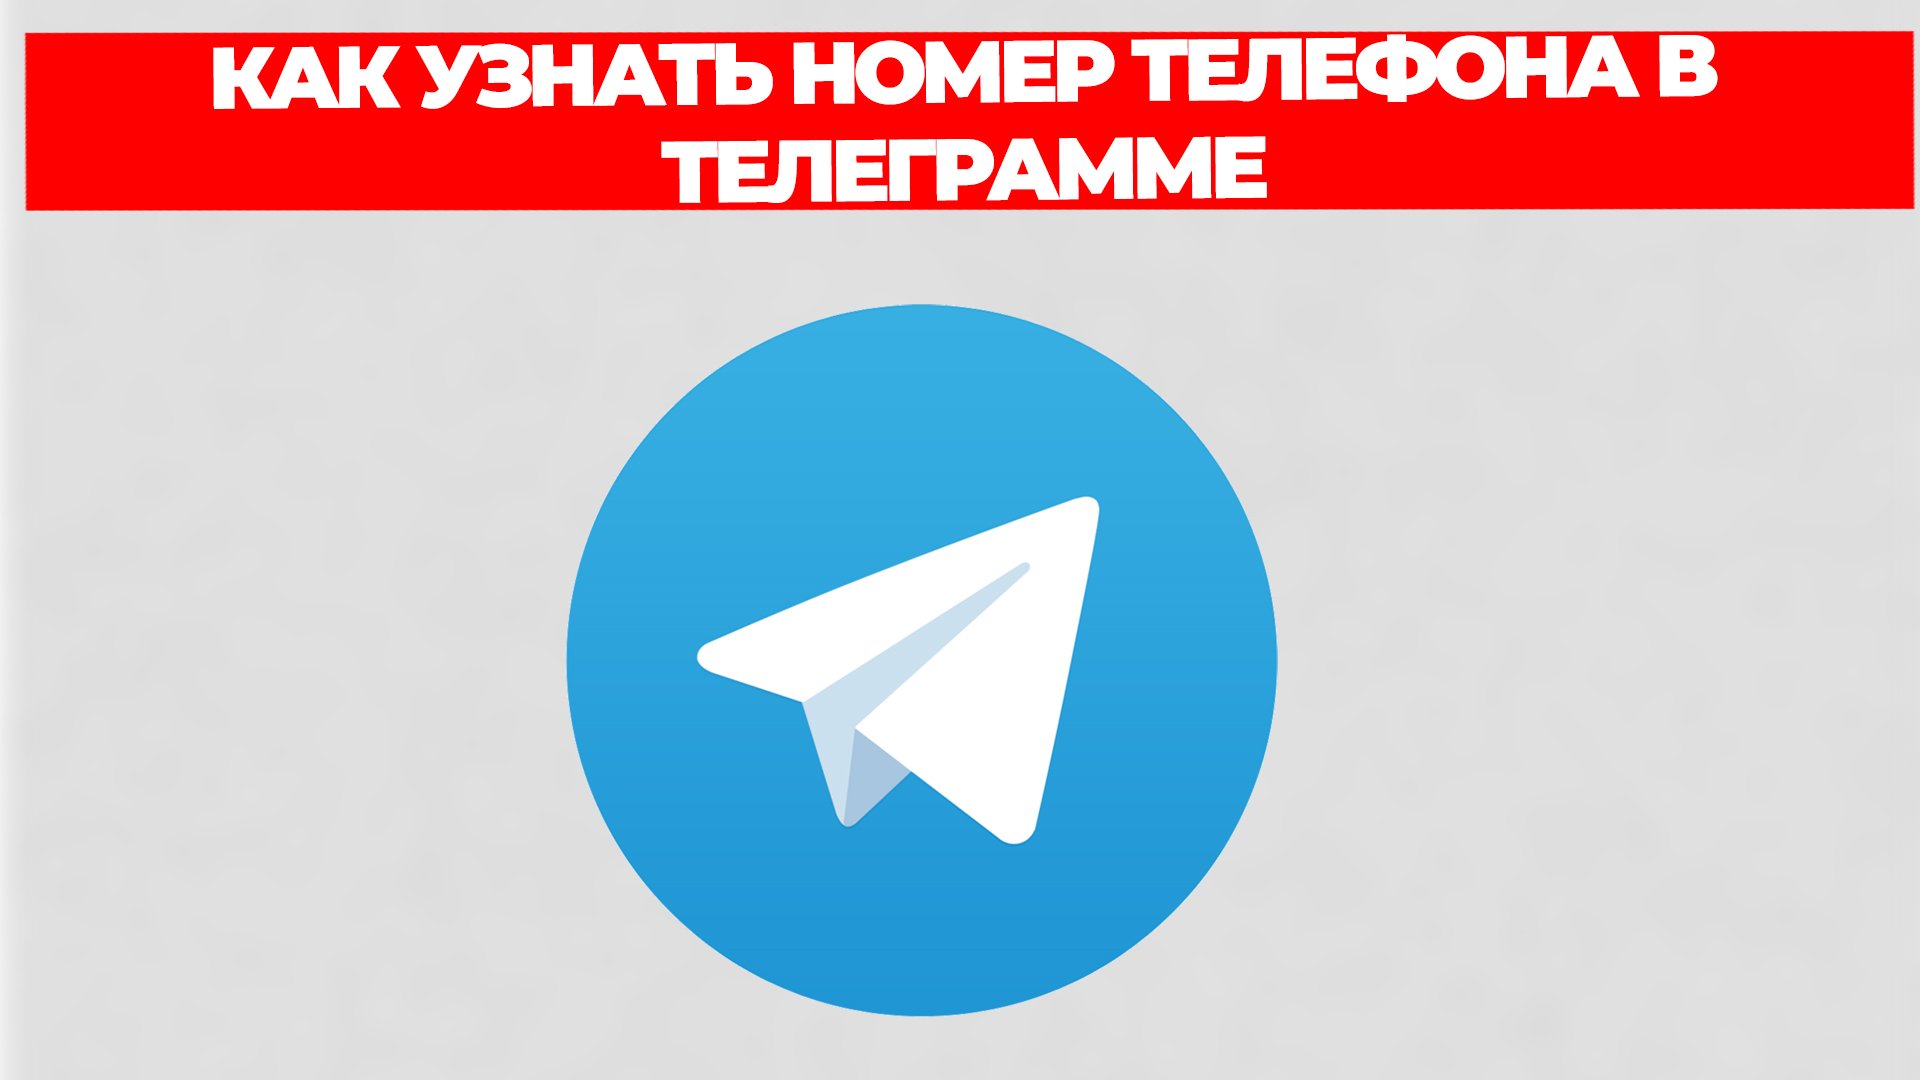 Скачать телеграмм бесплатно на телефон на русском последняя версия без регистрации фото 91